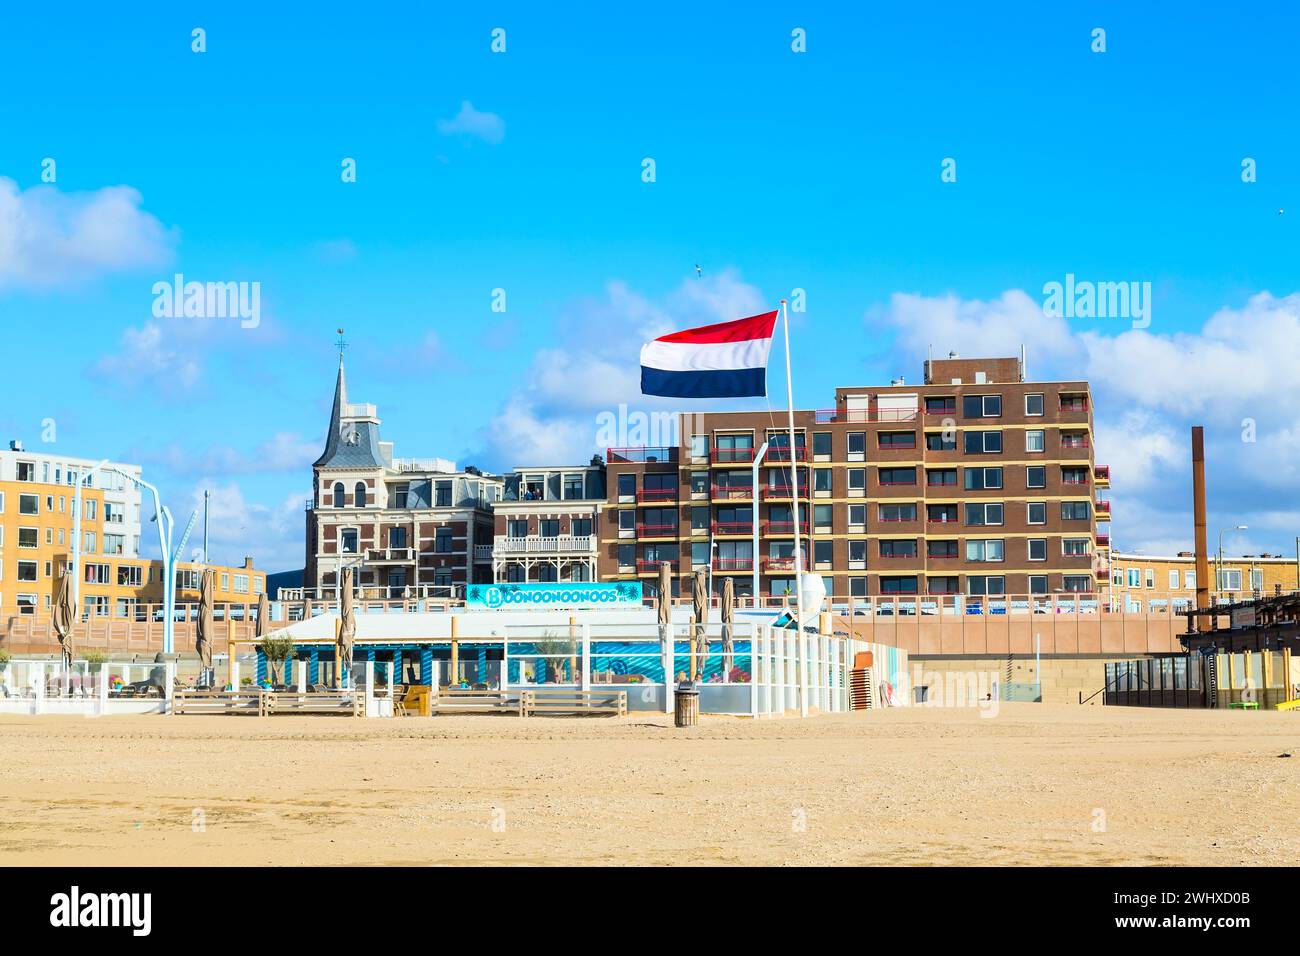 Famous Grand Hotel Amrath Kurhaus and Scheveningen beach panorama, Hague, Netherlands Stock Photo